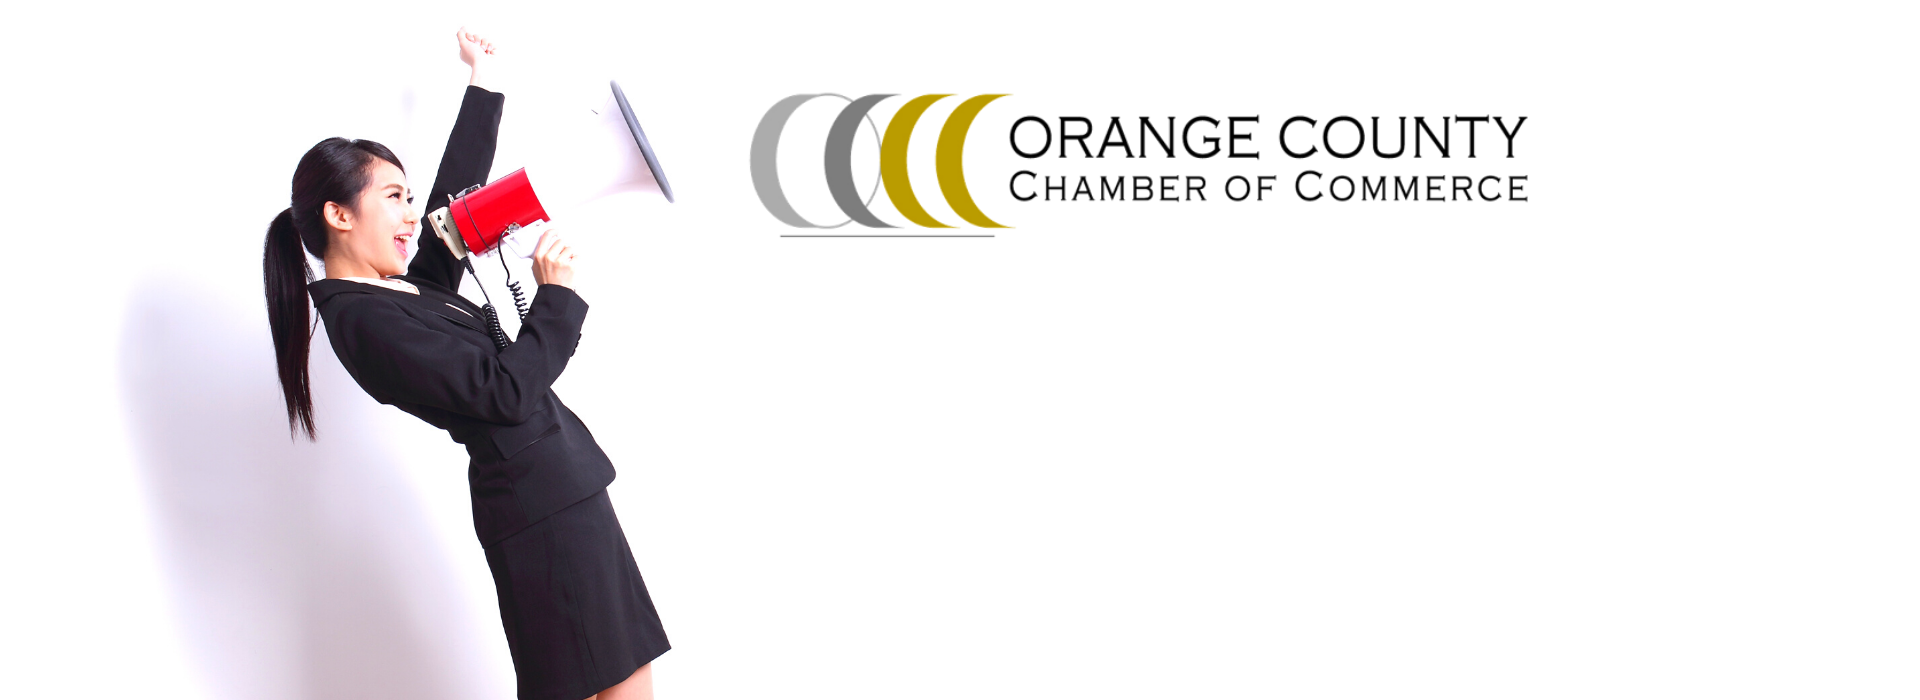 Orange County Chamber of Commerce - Slide